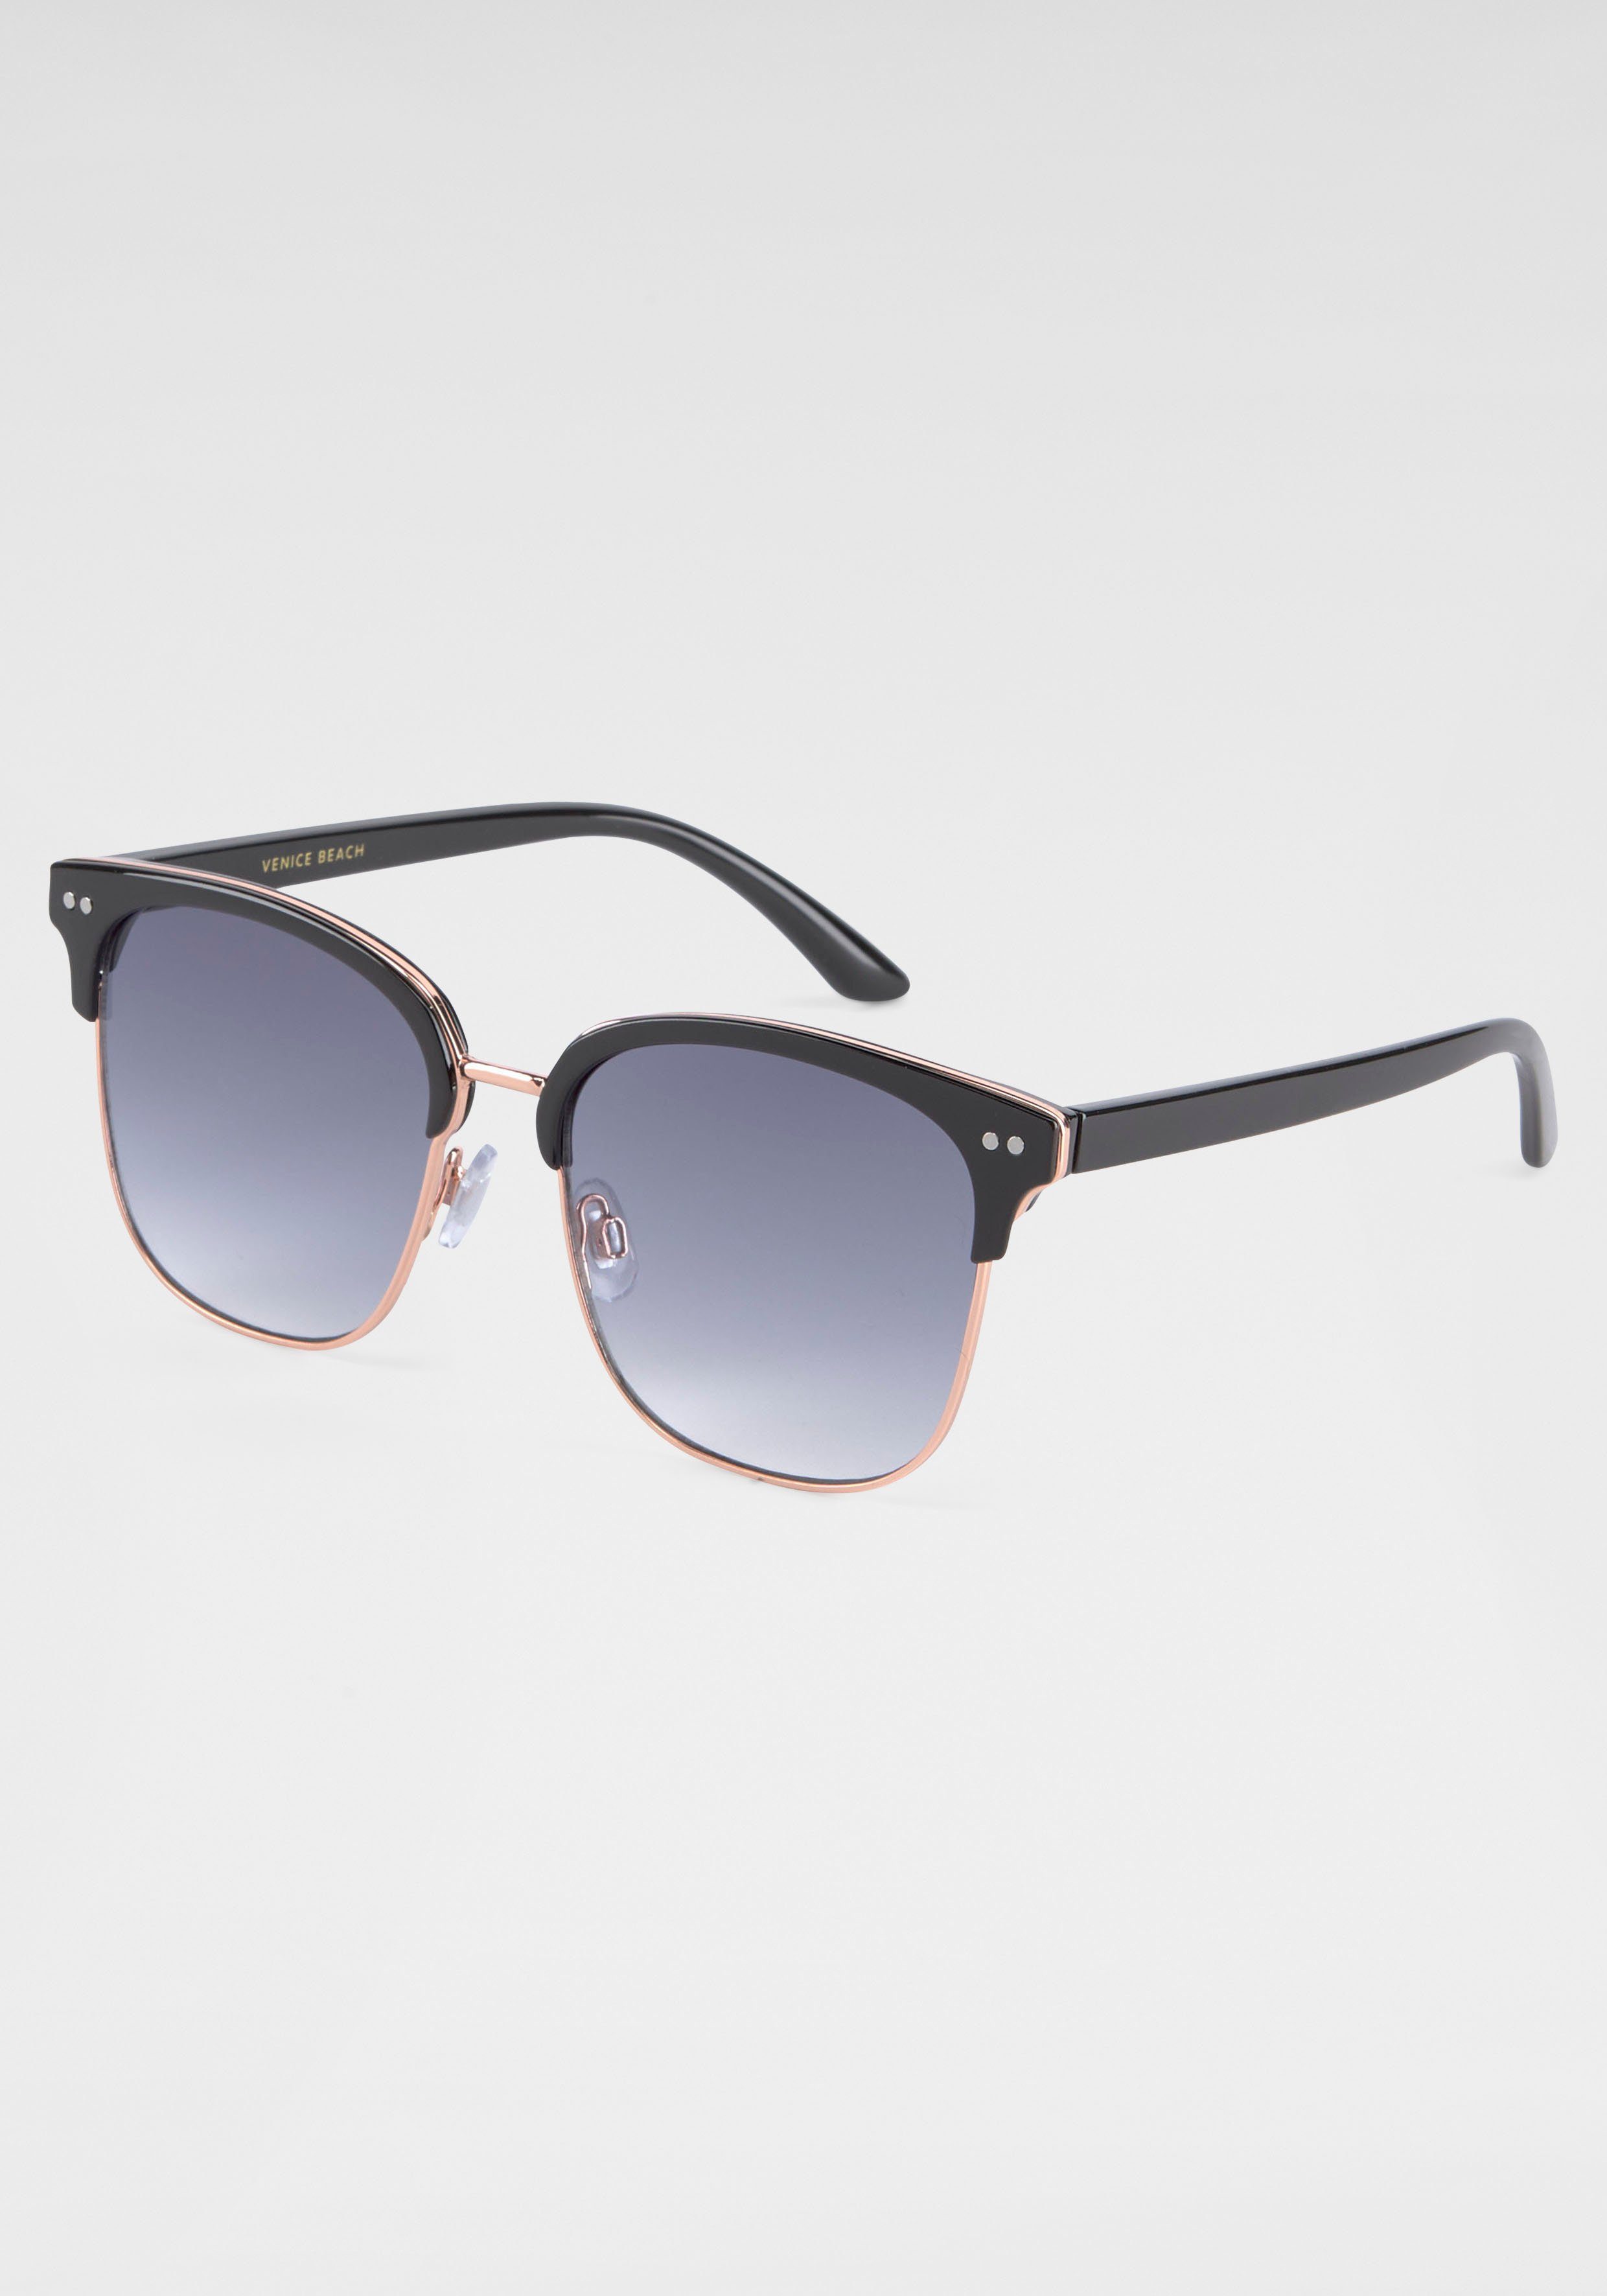 BACK schwarz Sonnenbrille IN mit Gläsern BLACK gebogenen Eyewear